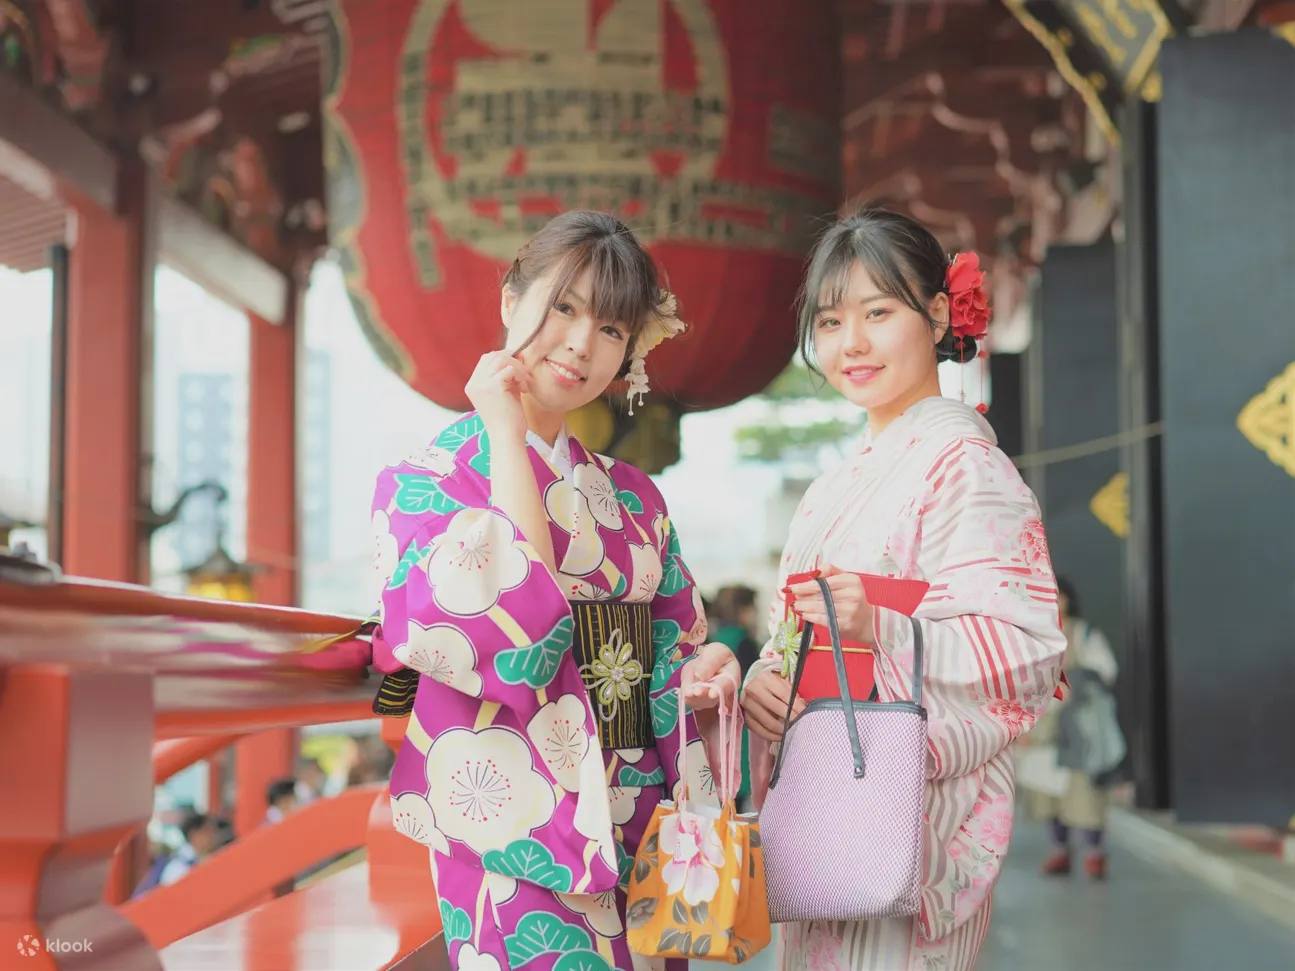 Summer Yukata Robes To Pick Up Japanese Girls In – Tokyo Fashion